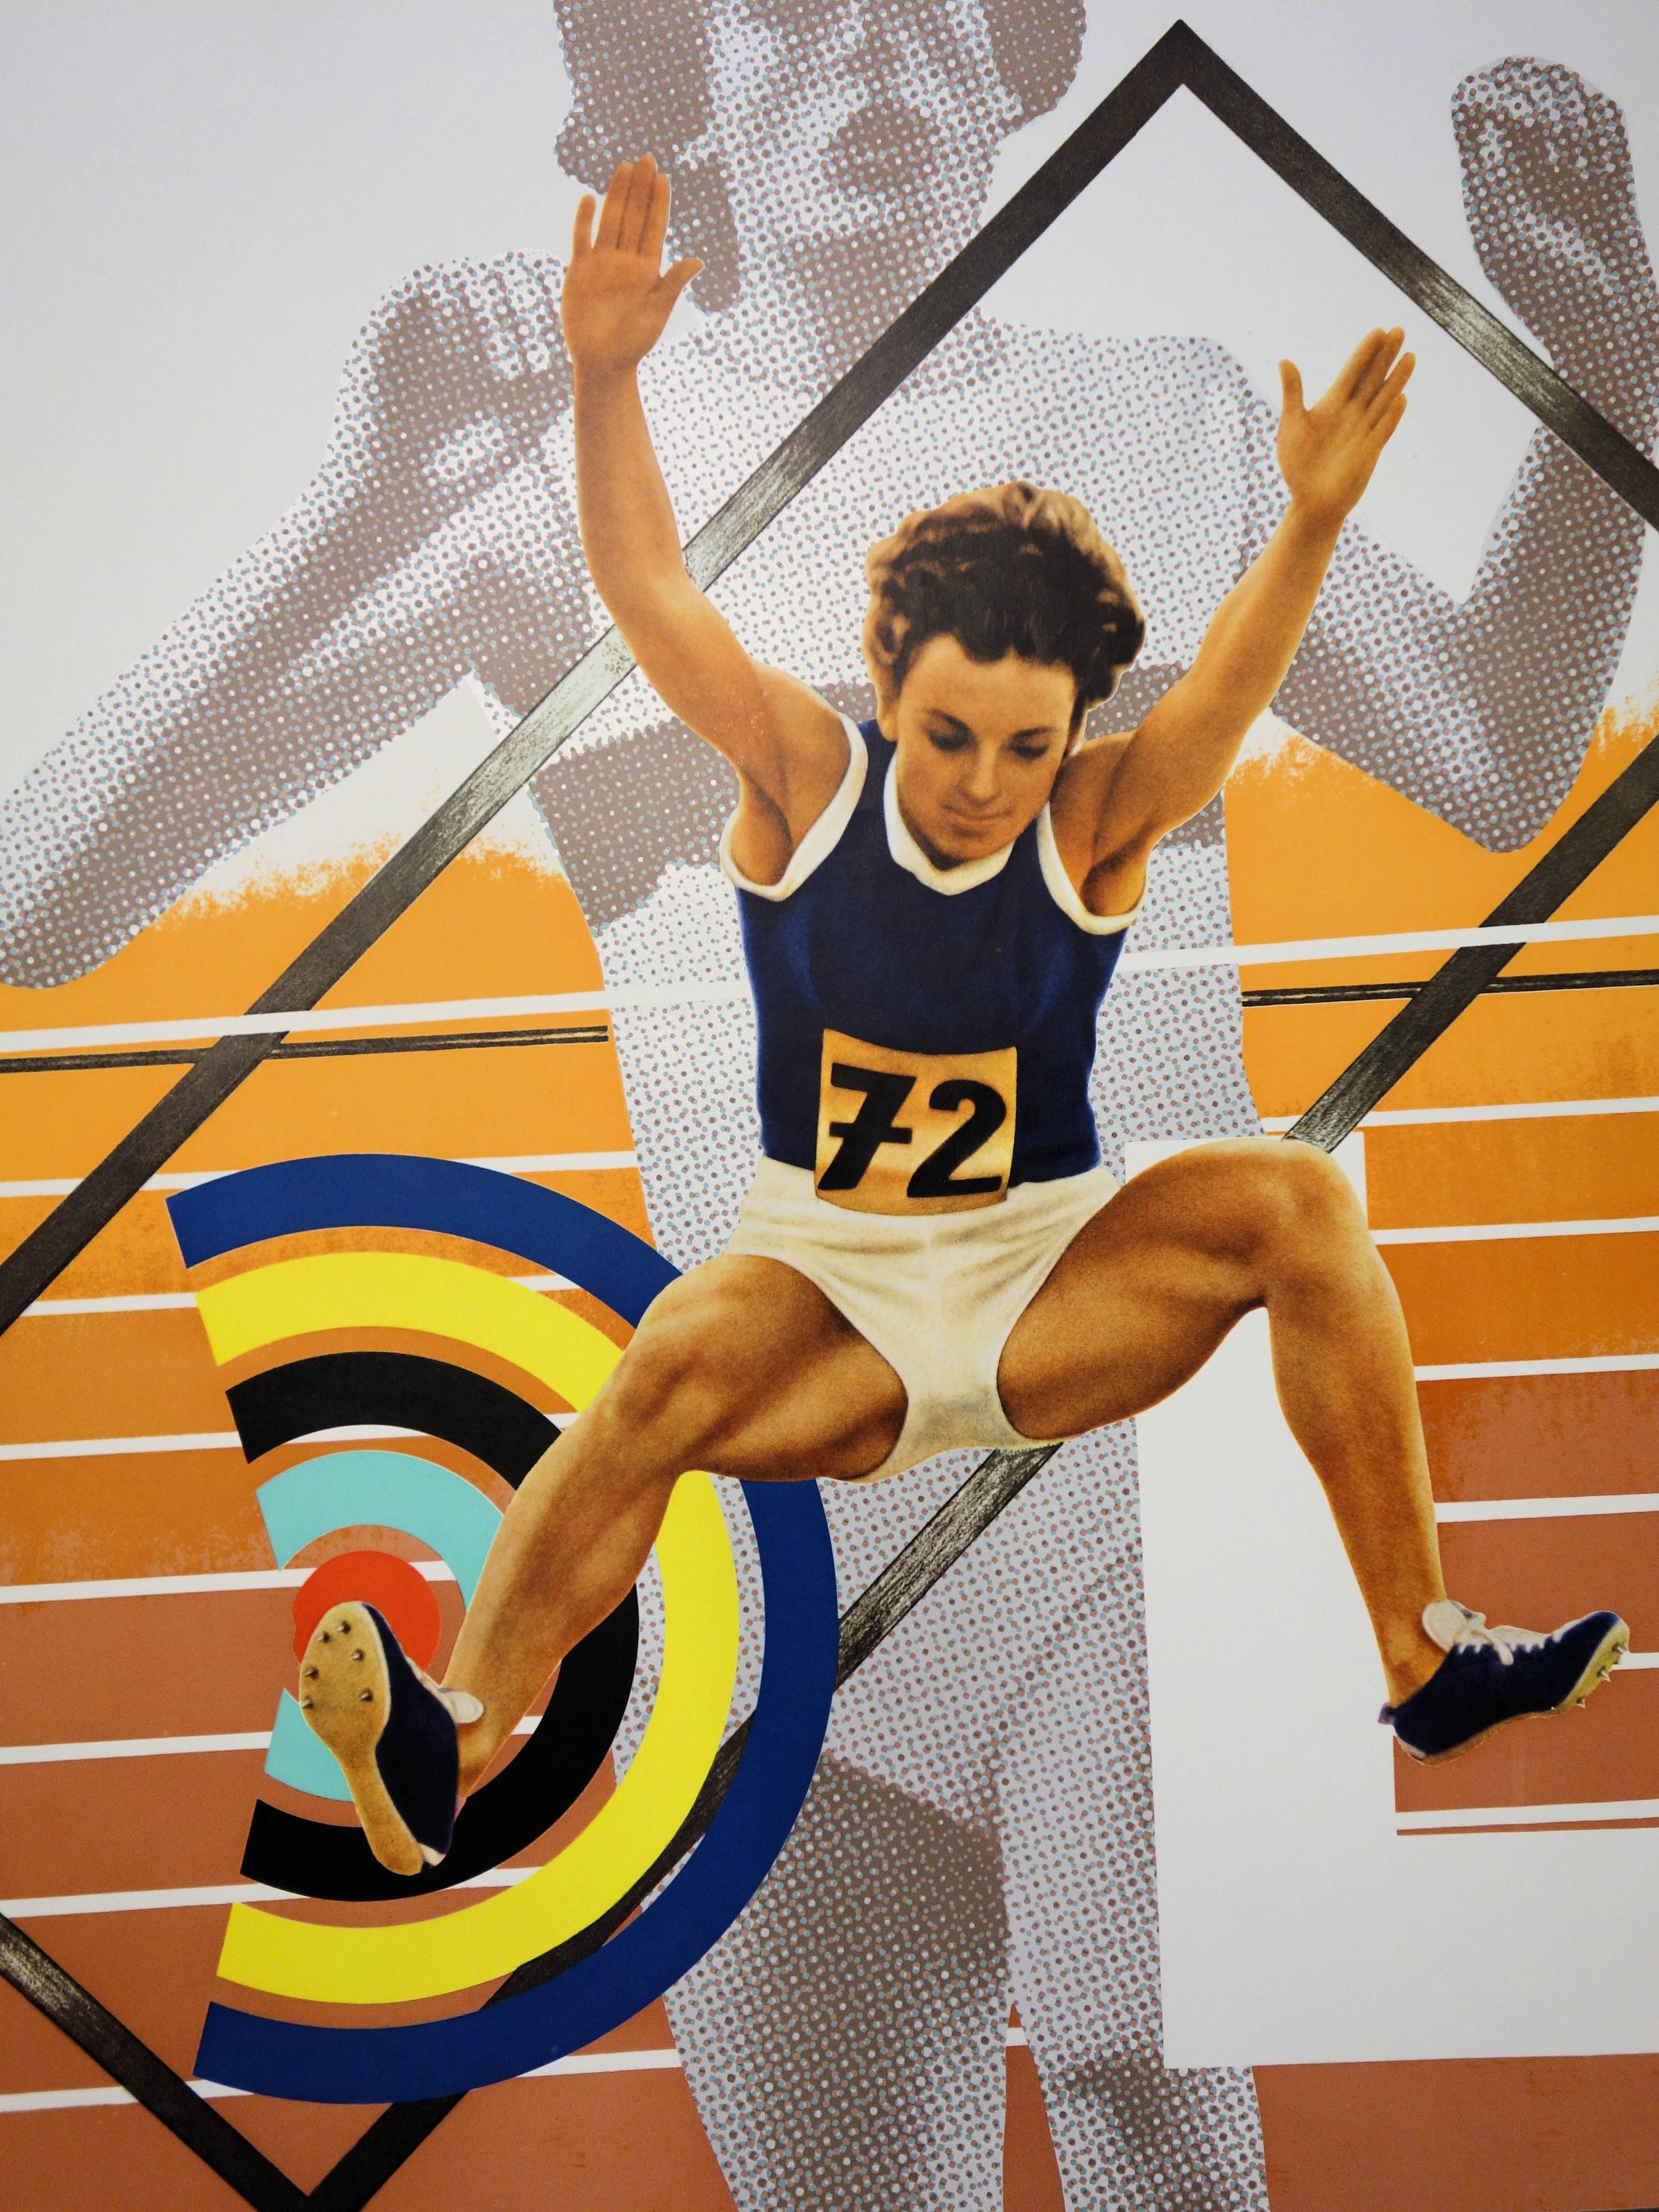 Peter PHILIPS
Athlétisme : plus haut, plus fort, plus loin

Lithographie et offset
Signature imprimée dans la plaque
Sur papier d'édition 101 x 64 cm (c. 40 x 26 inch)
Réalisé pour les Jeux olympiques de Munich, en 1972

Excellent état